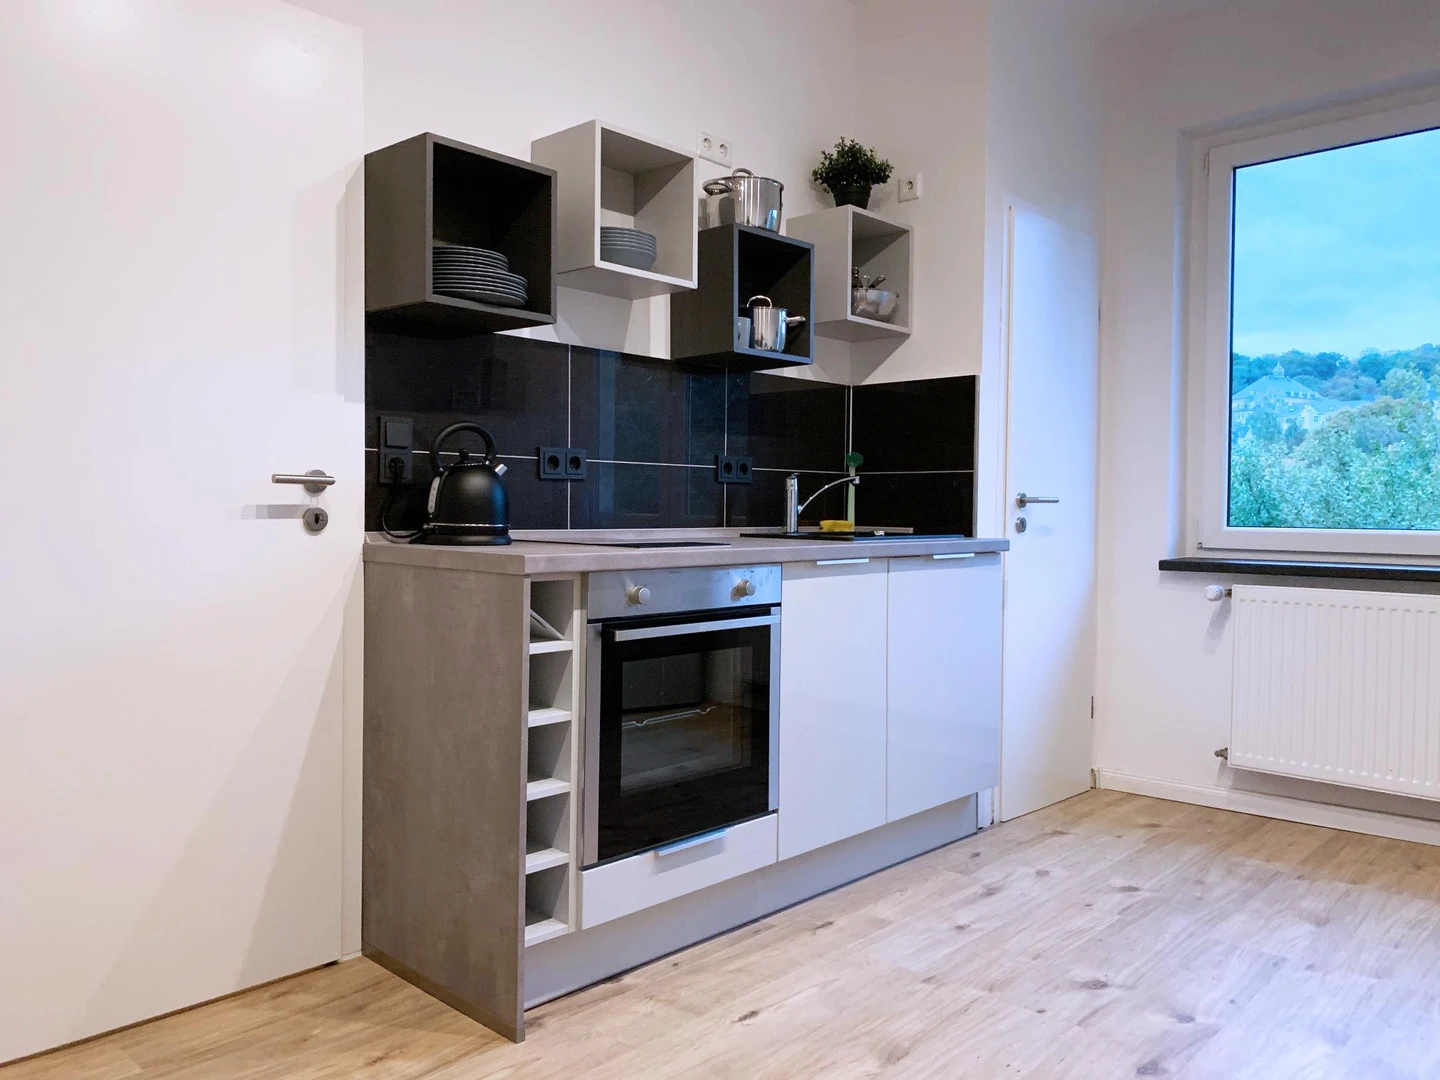 Alquiler de habitaciones por meses en Wuppertal